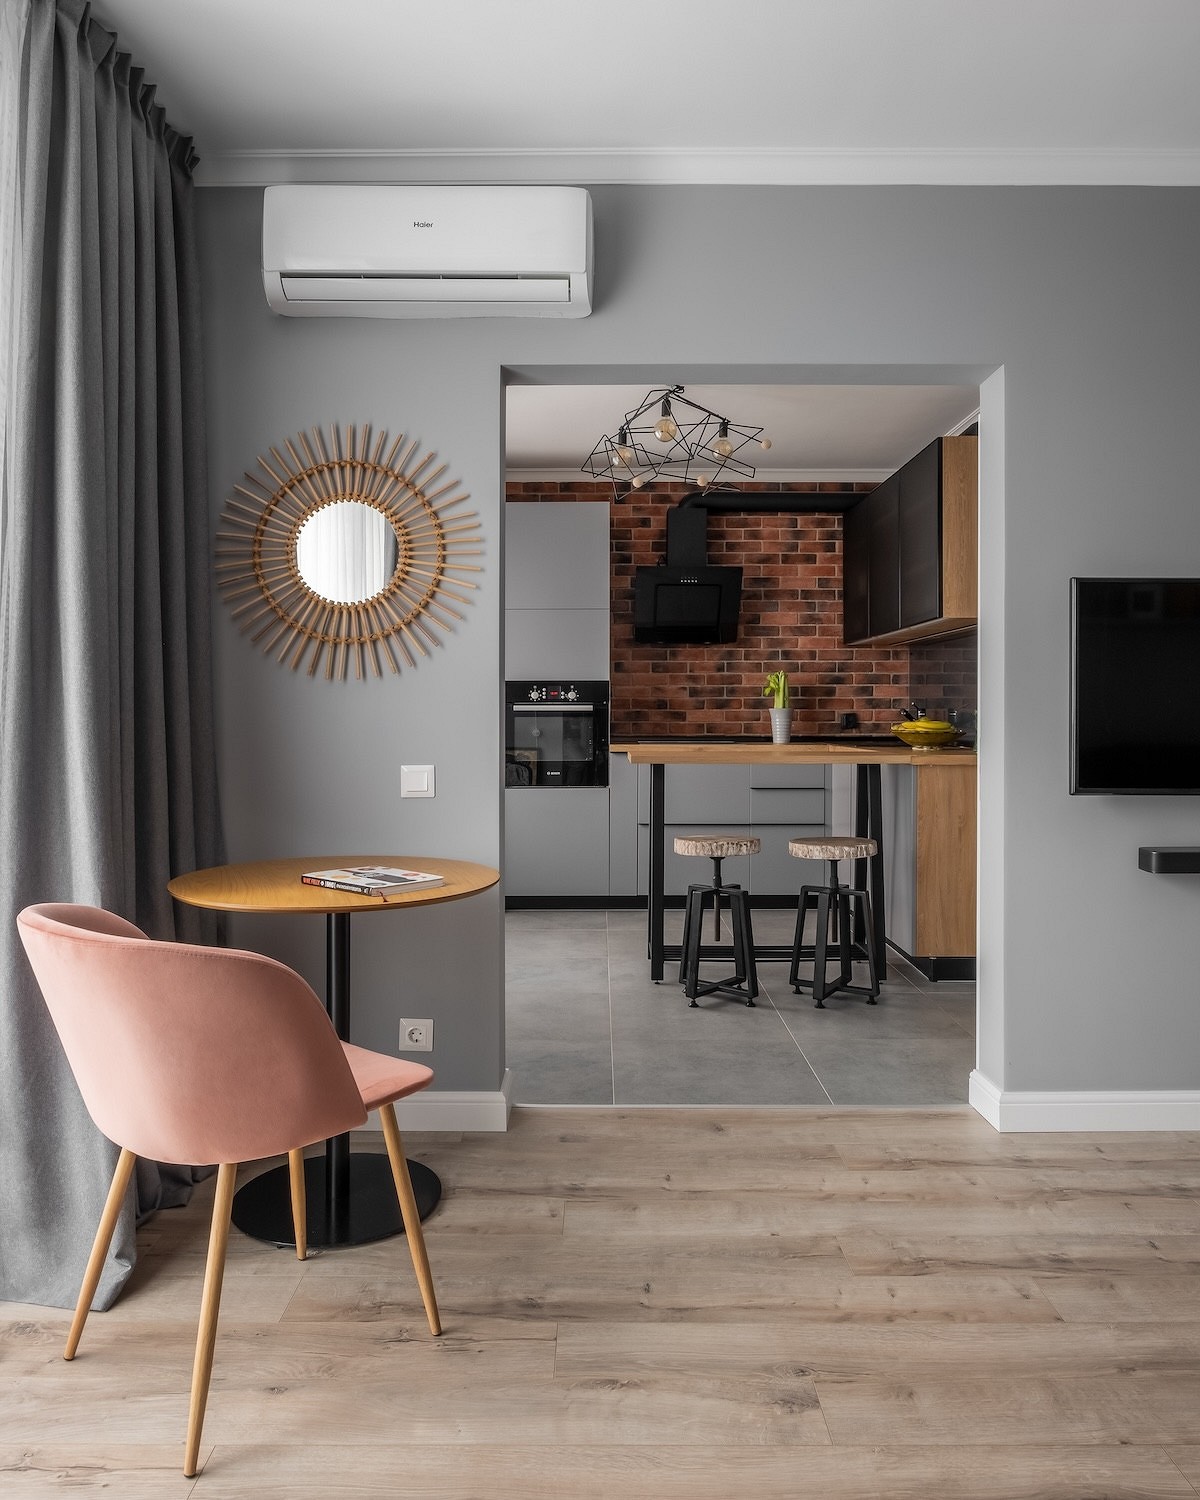 Как из типовой квартиры сделать стильную и уютную? Пример от дизайнера на площади 65 кв. м (фото до и после)18